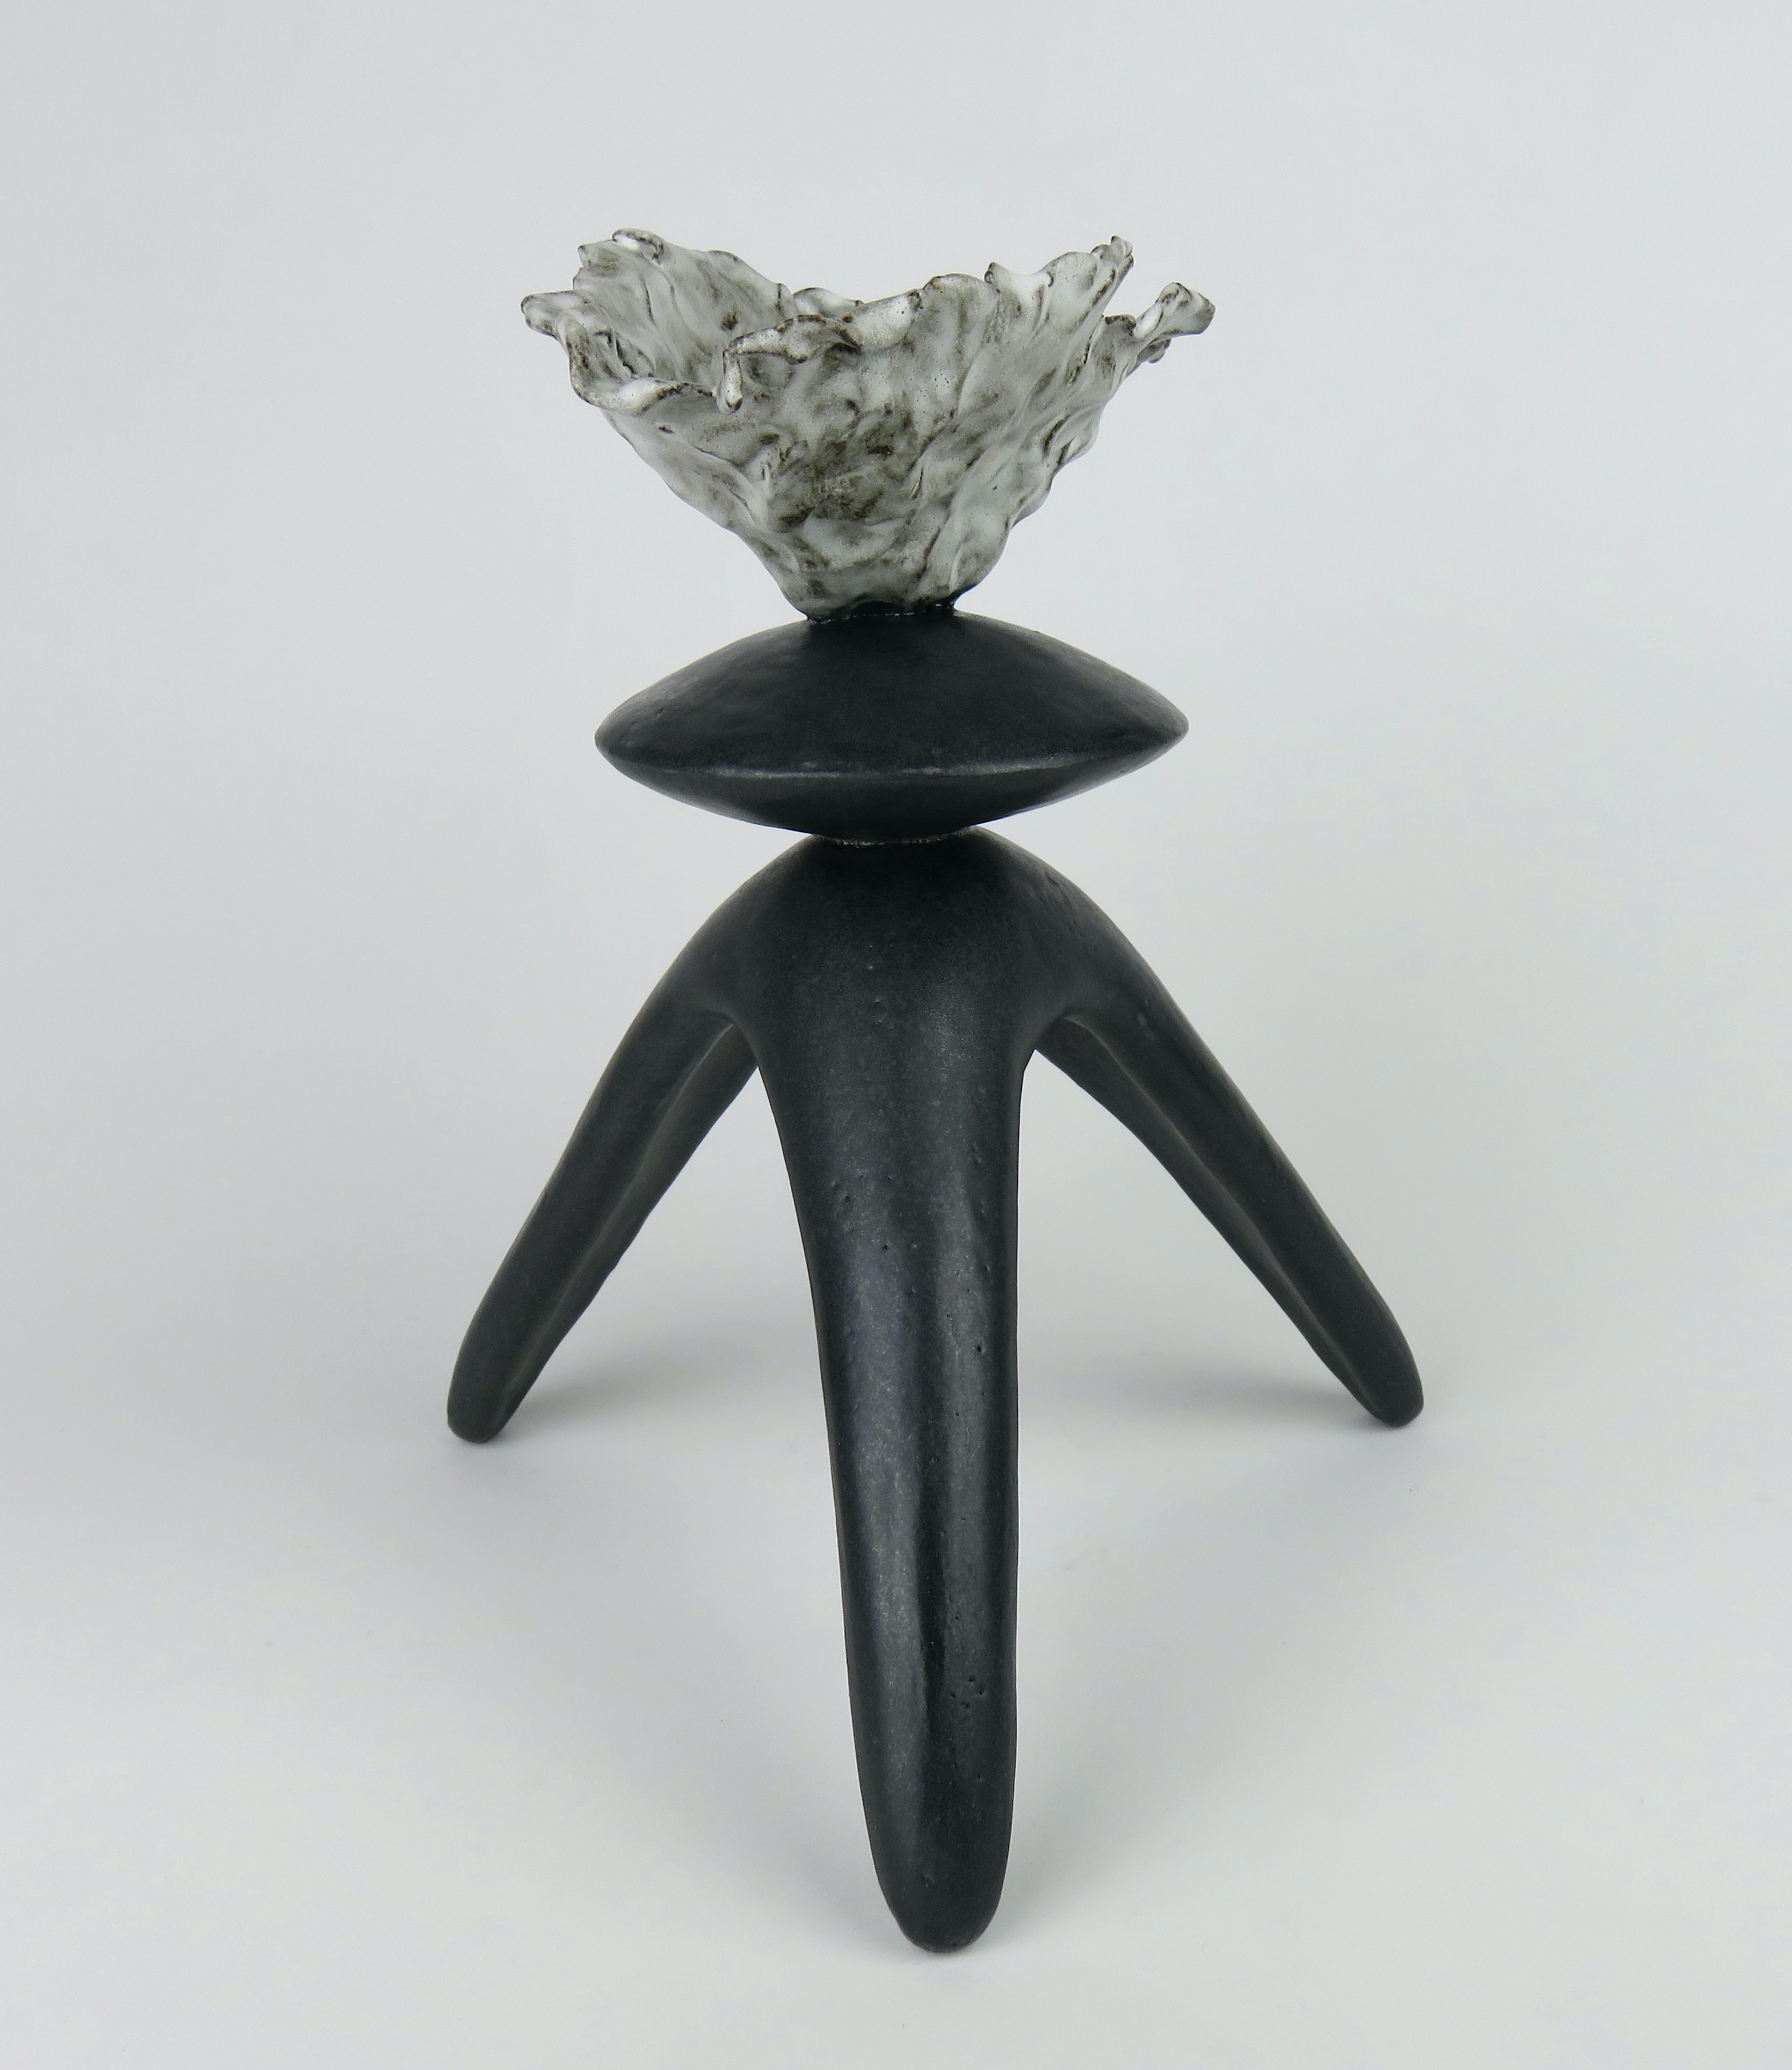 Dieses glasierte, schwarze, handgefertigte, moderne TOTEM aus Keramik besteht aus einer frei geformten, offenen Oberseite mit einer mittleren Kugelform auf dreibeinigen Beinen. Teil einer Serie von modernen totemistischen Werken. 
Der dunkelbraune